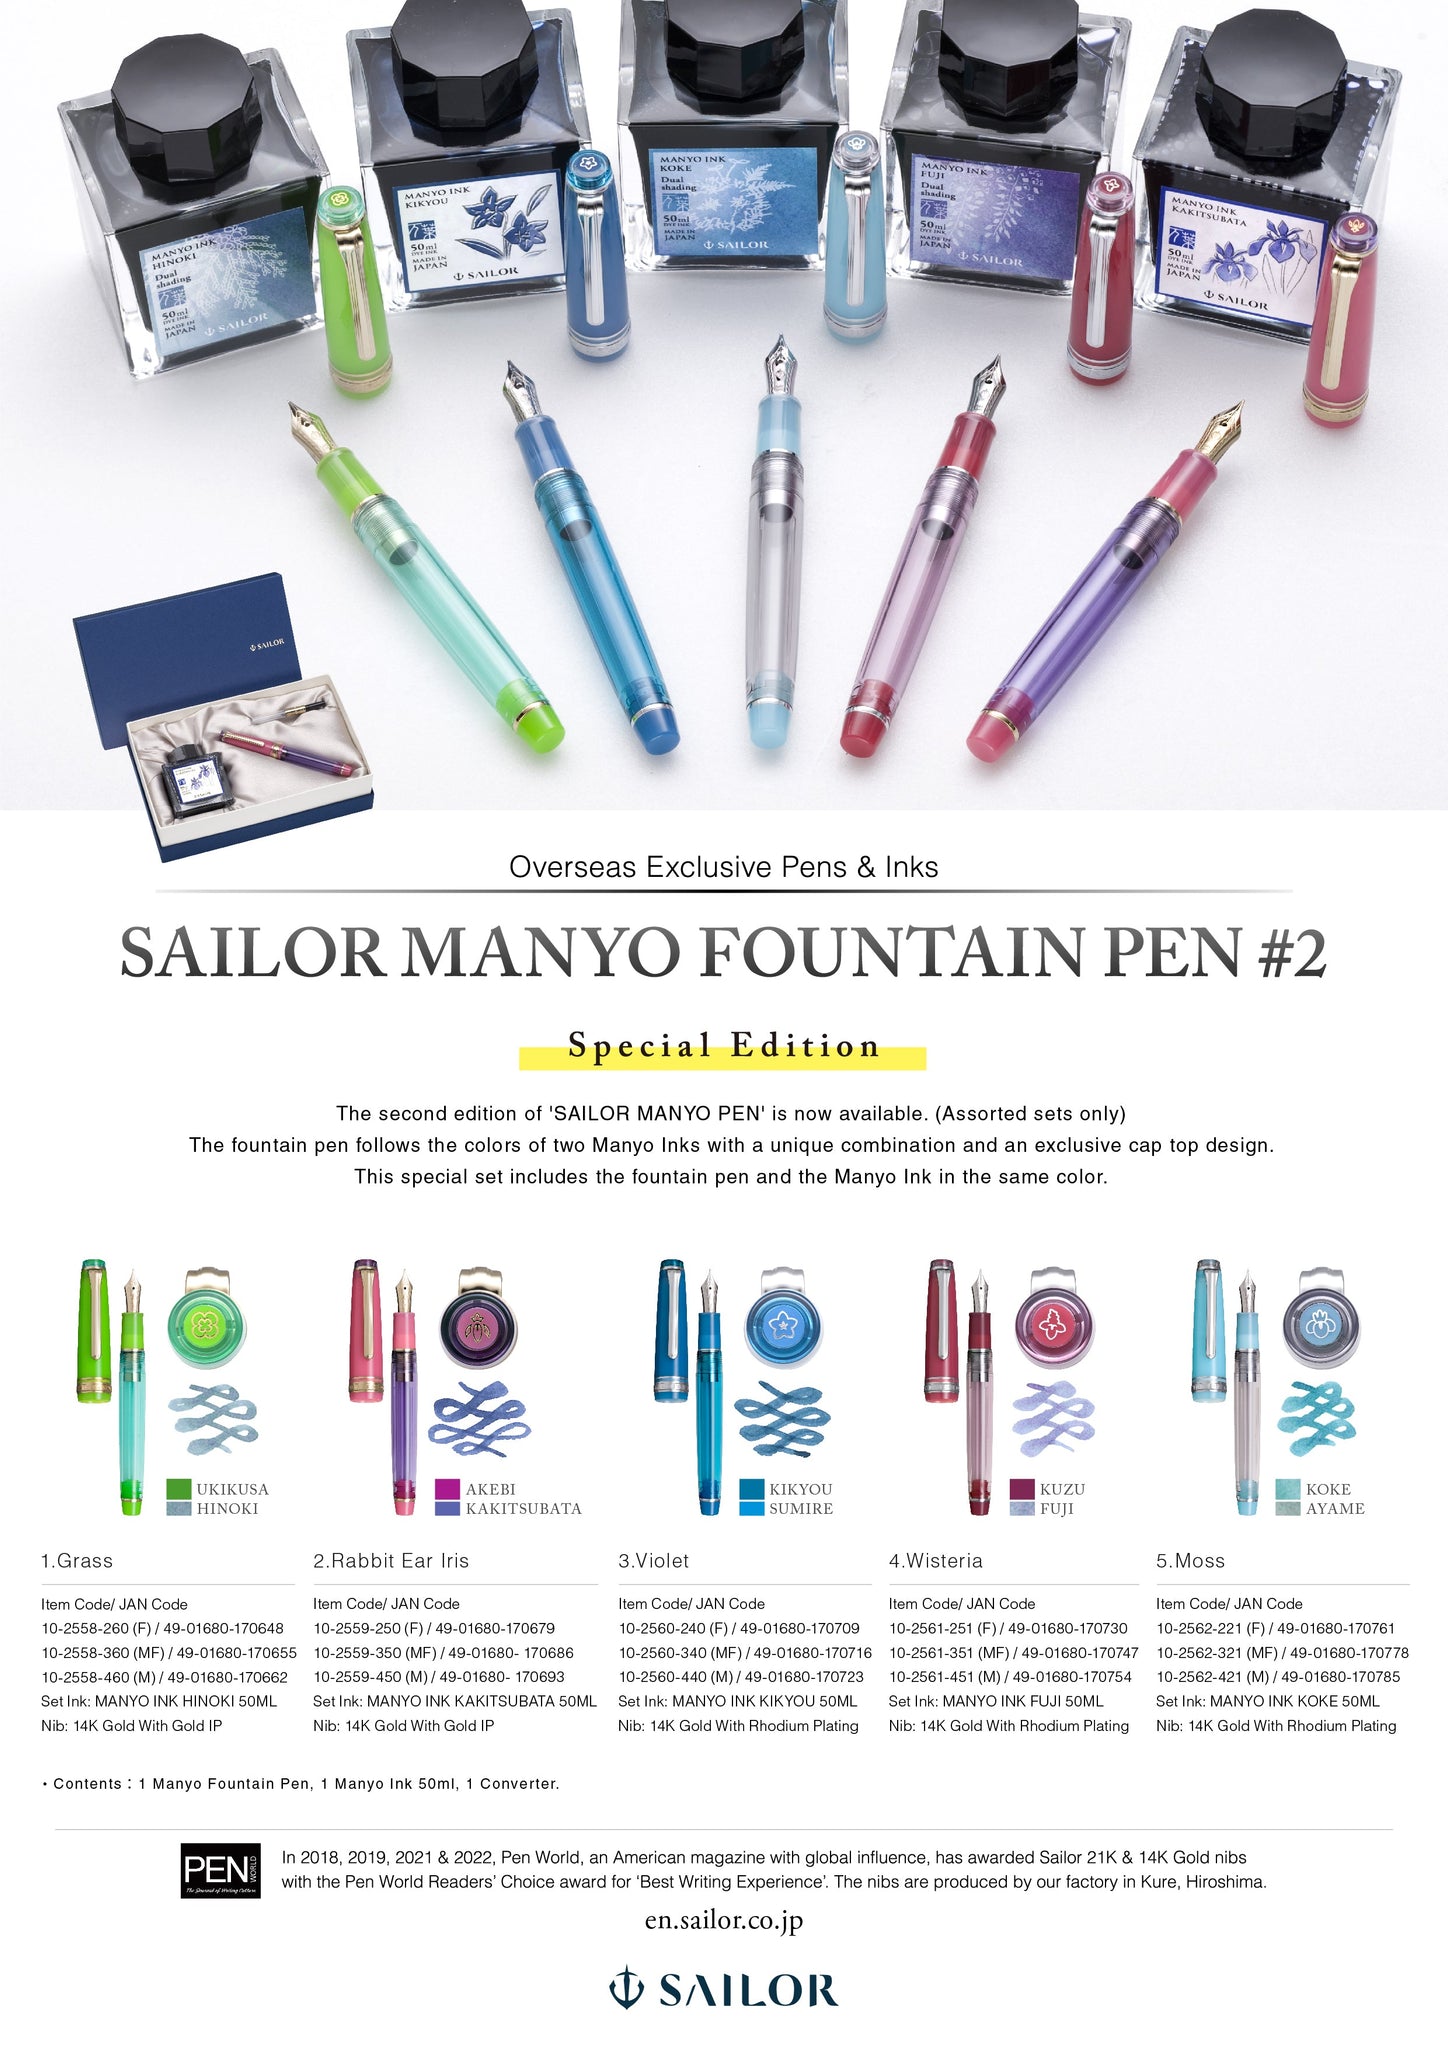 Sailor Manyo Fuji Ink